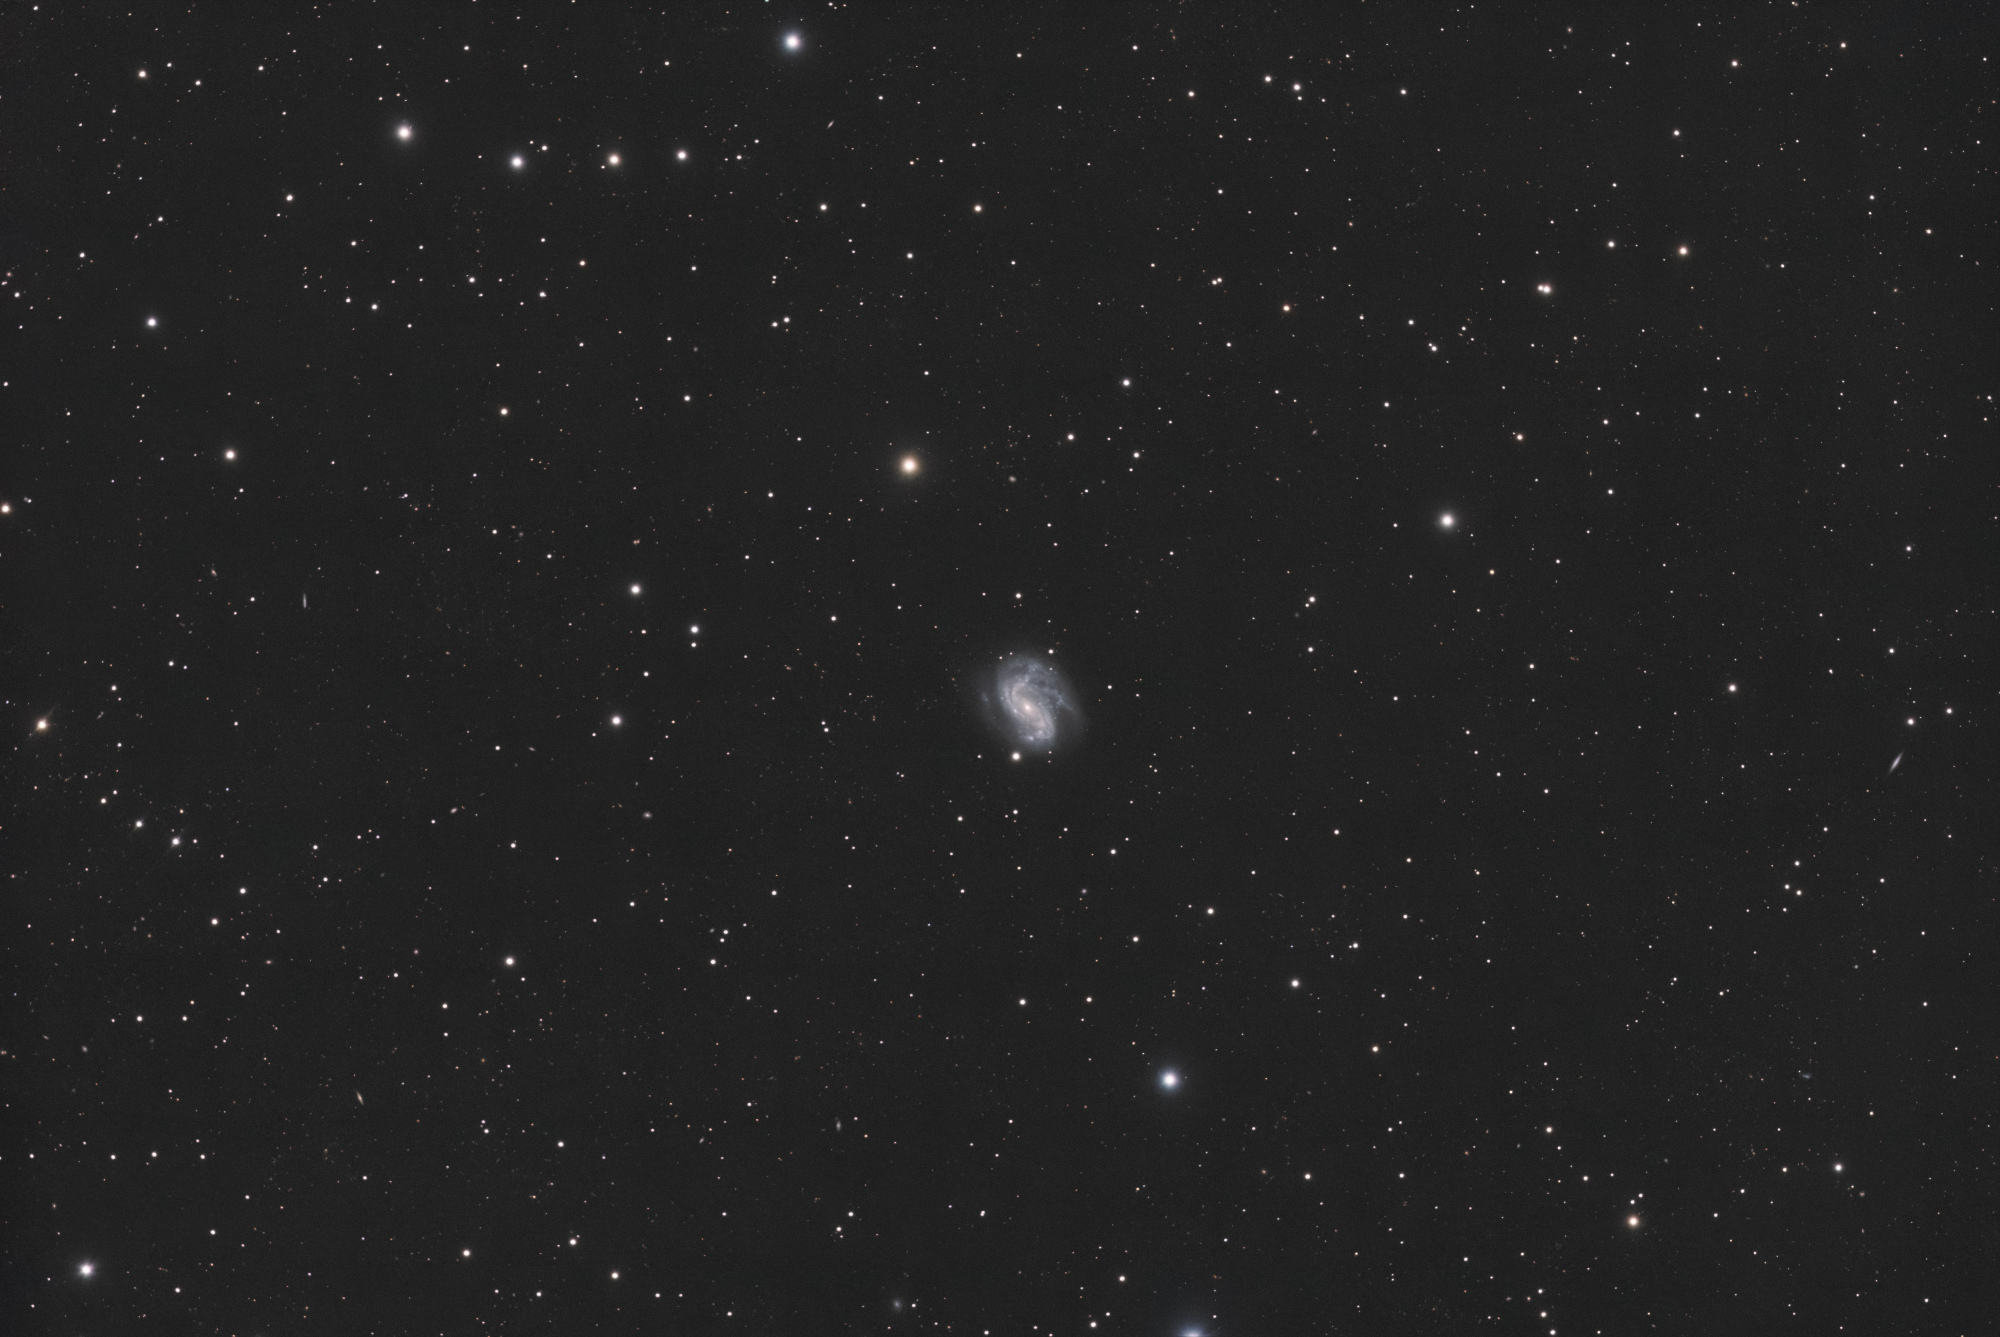 NGC 4051_SIRIL-L2-iris-cs5-4-FINAL-4-x.jpg